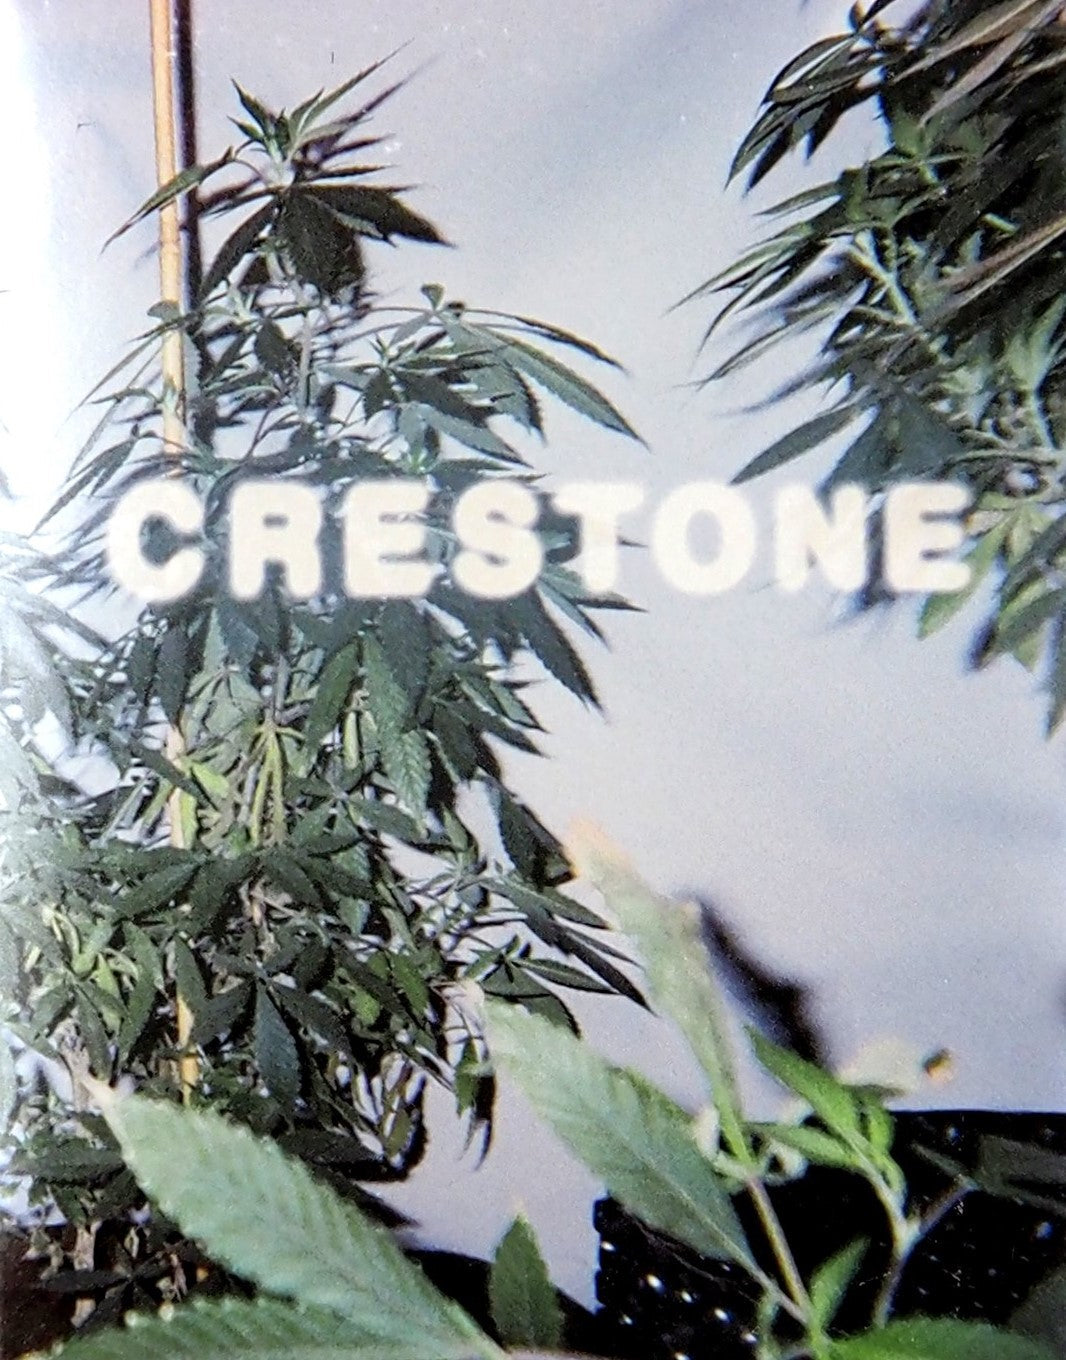 Crestone (Limited Edition) Blu-Ray Blu-Ray